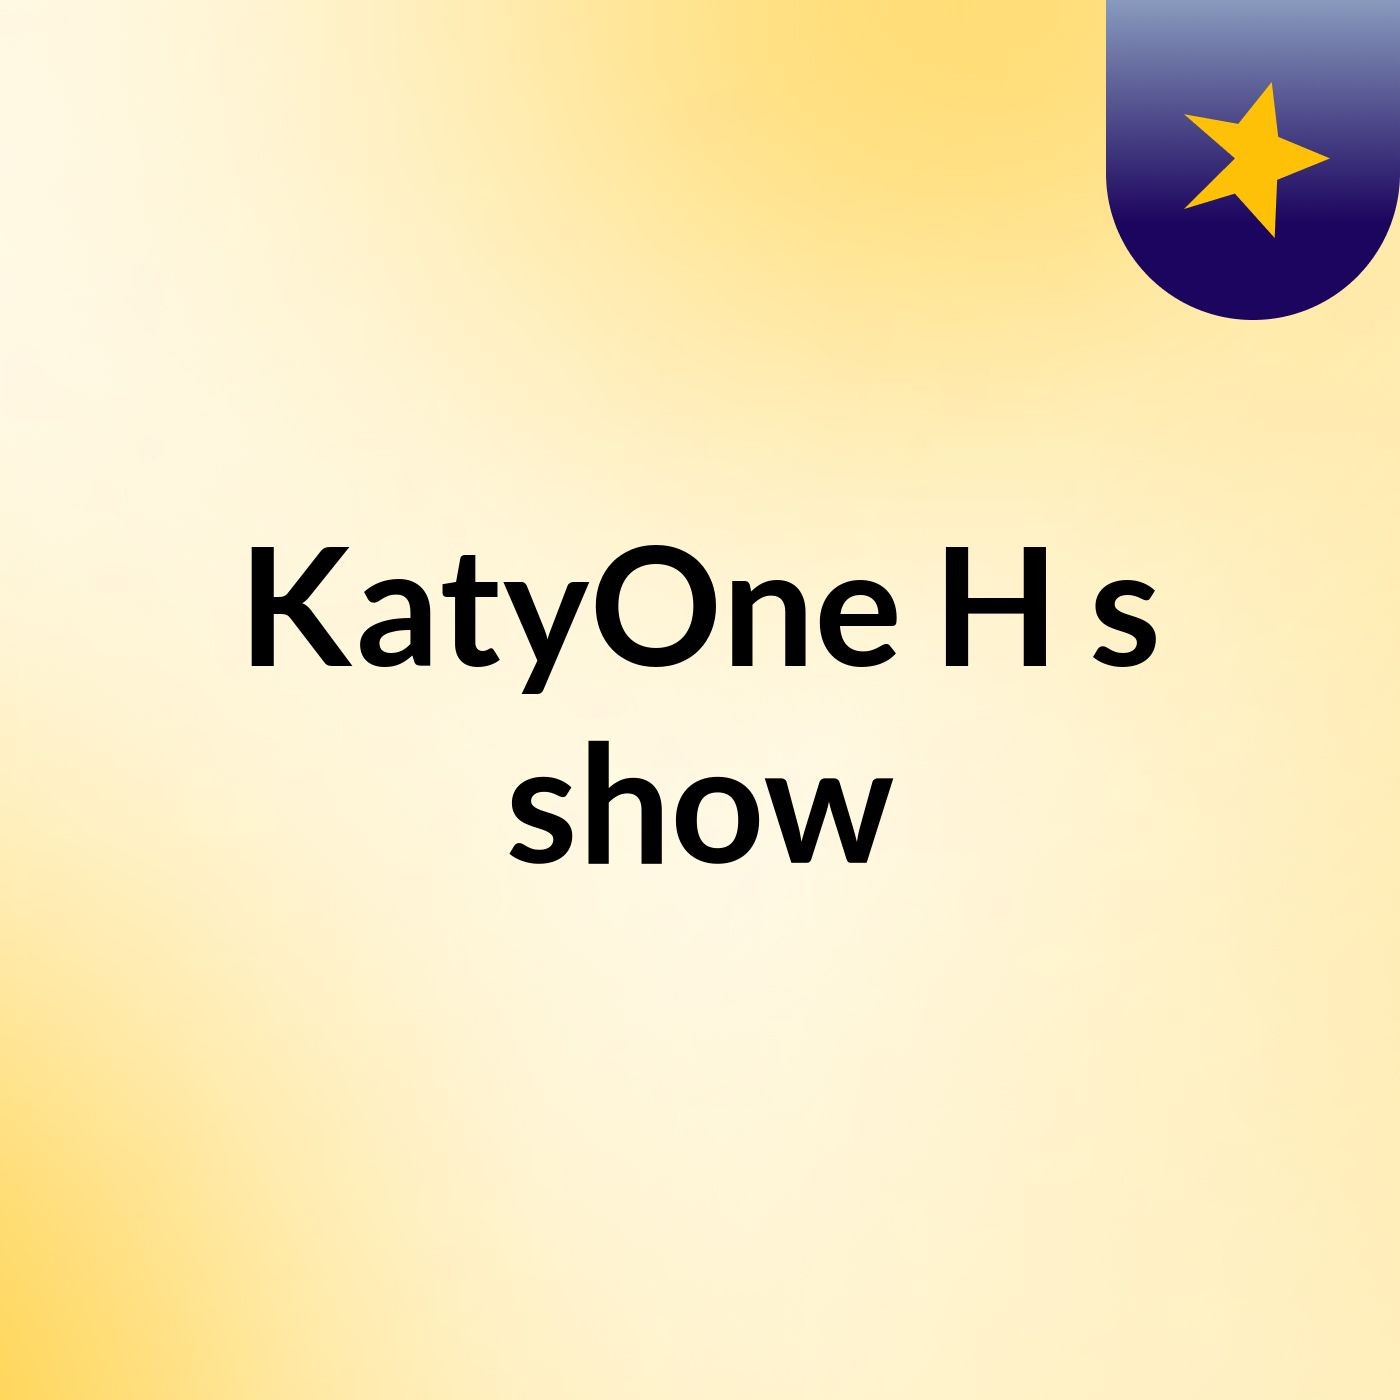 KatyOne H's show